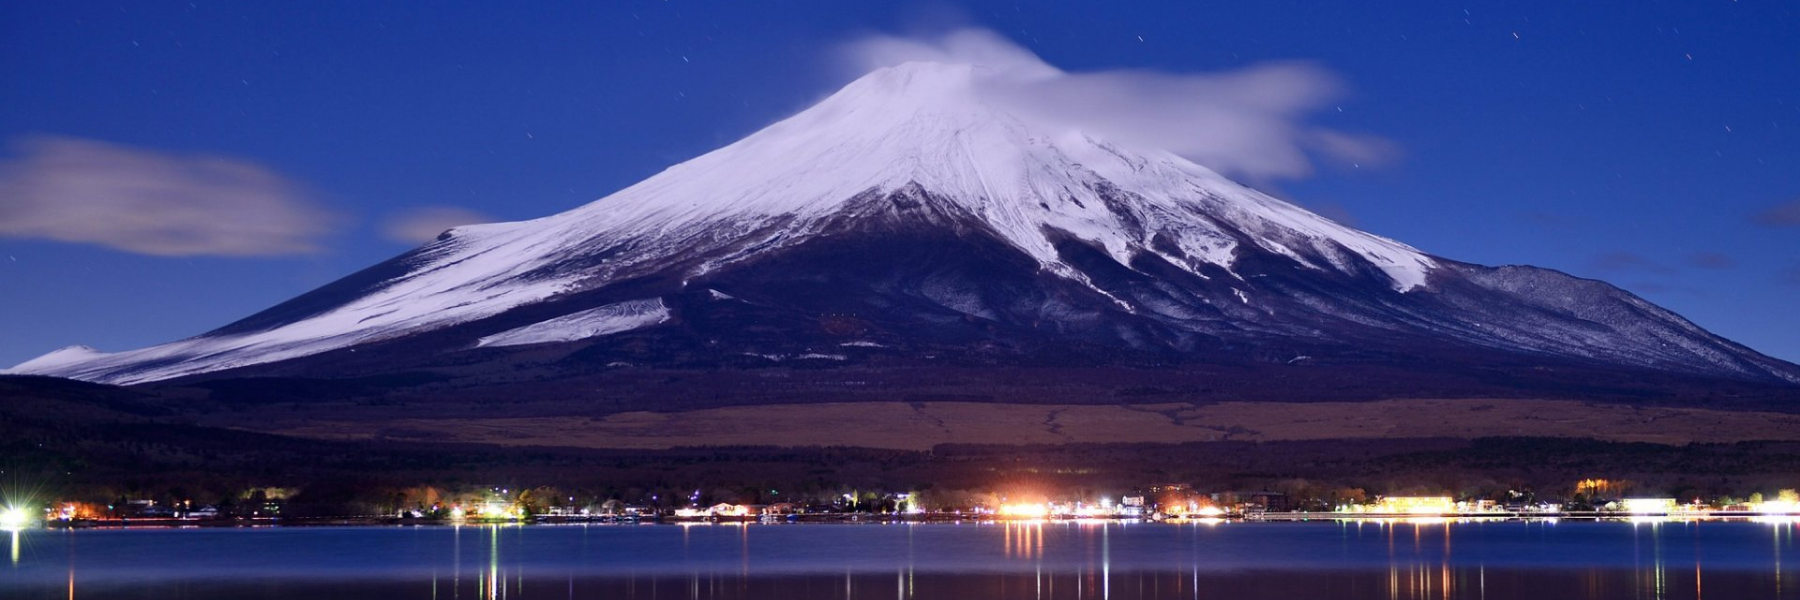 Фудзи самара. Гора-вулкан Фудзияма. Японский вулкан Фудзияма. Гора Фудзи. Вулкан Фудзияма извержение.